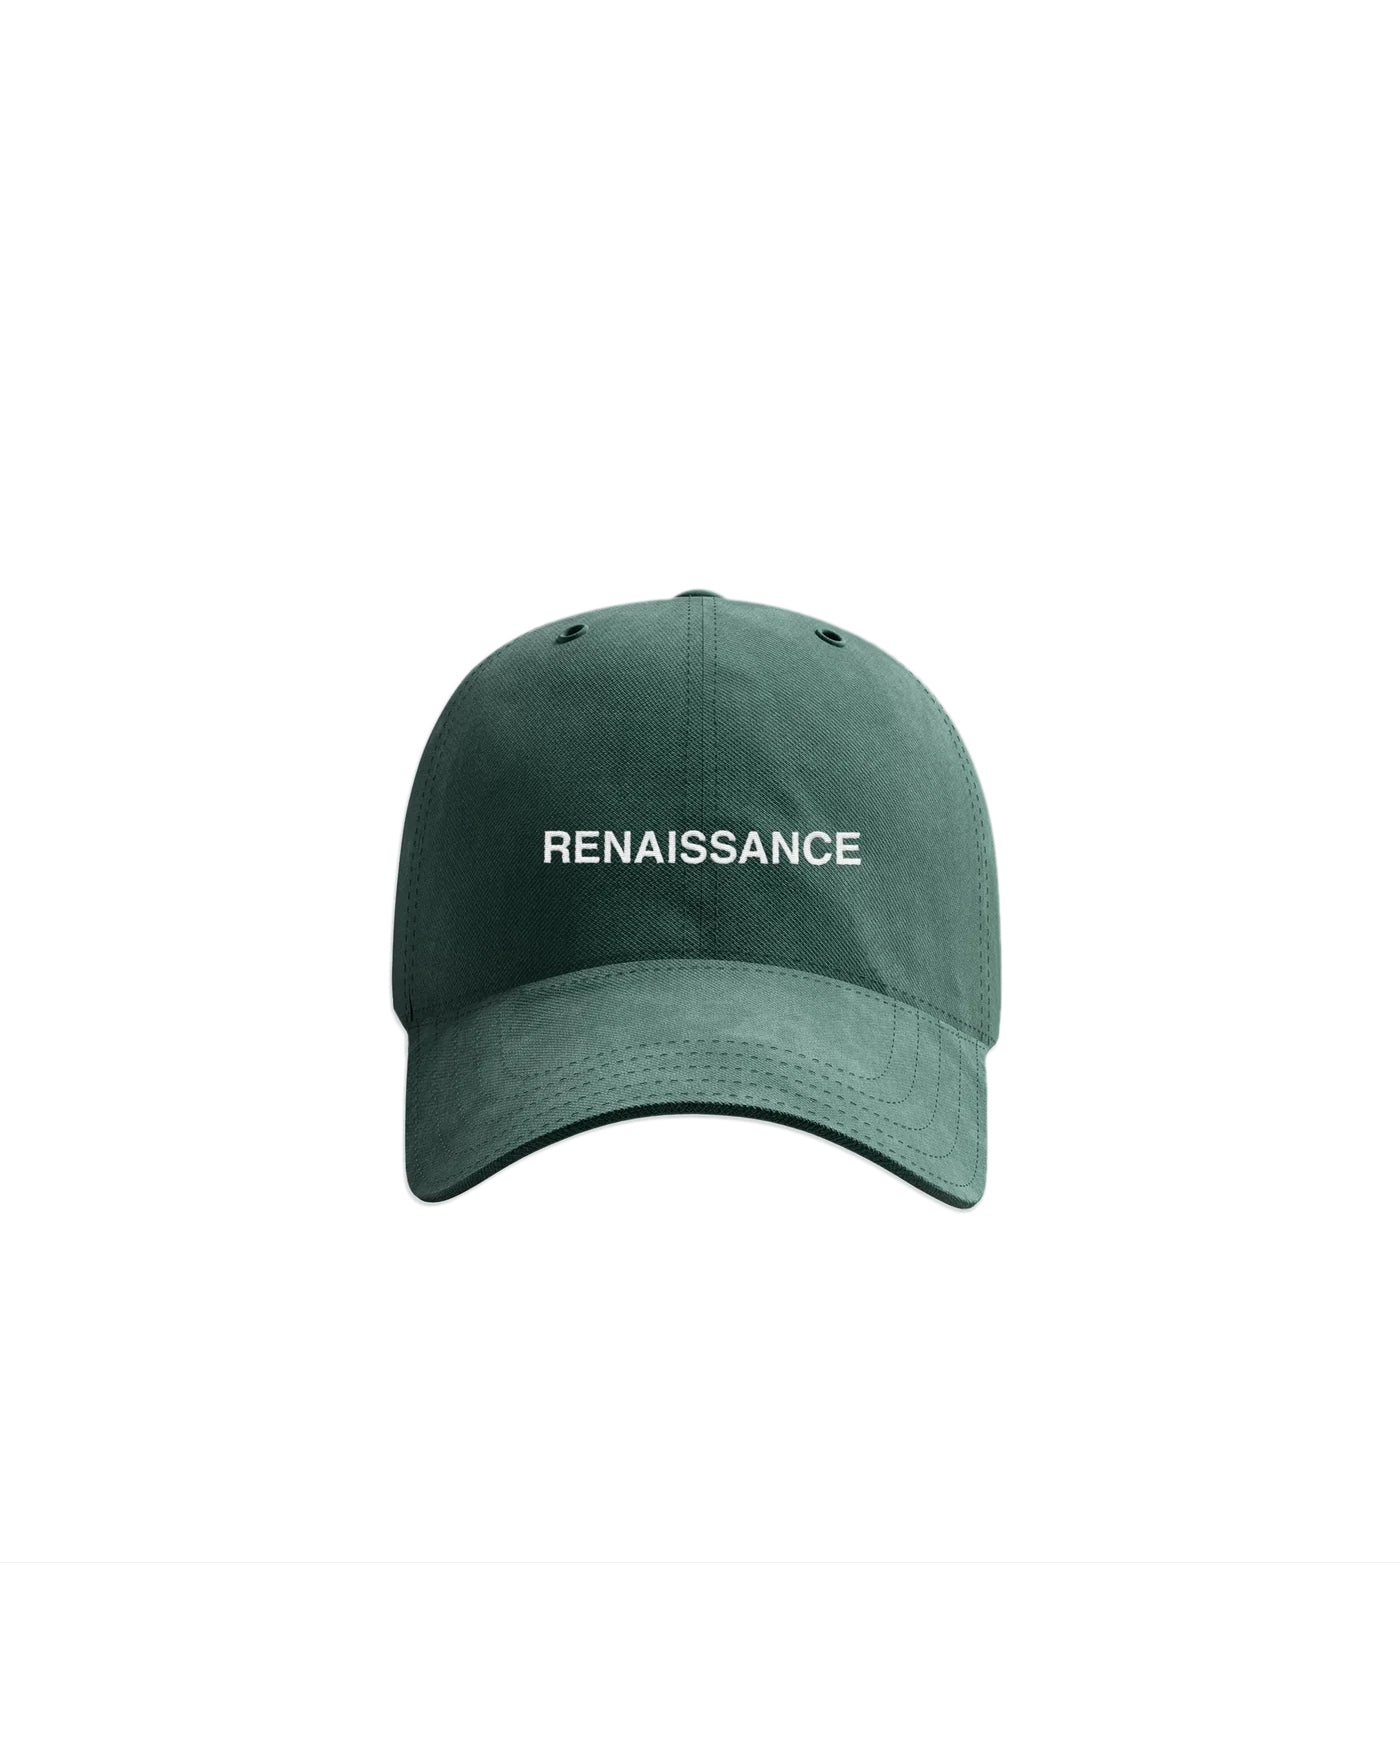 ルネッサンスのお父さんの帽子